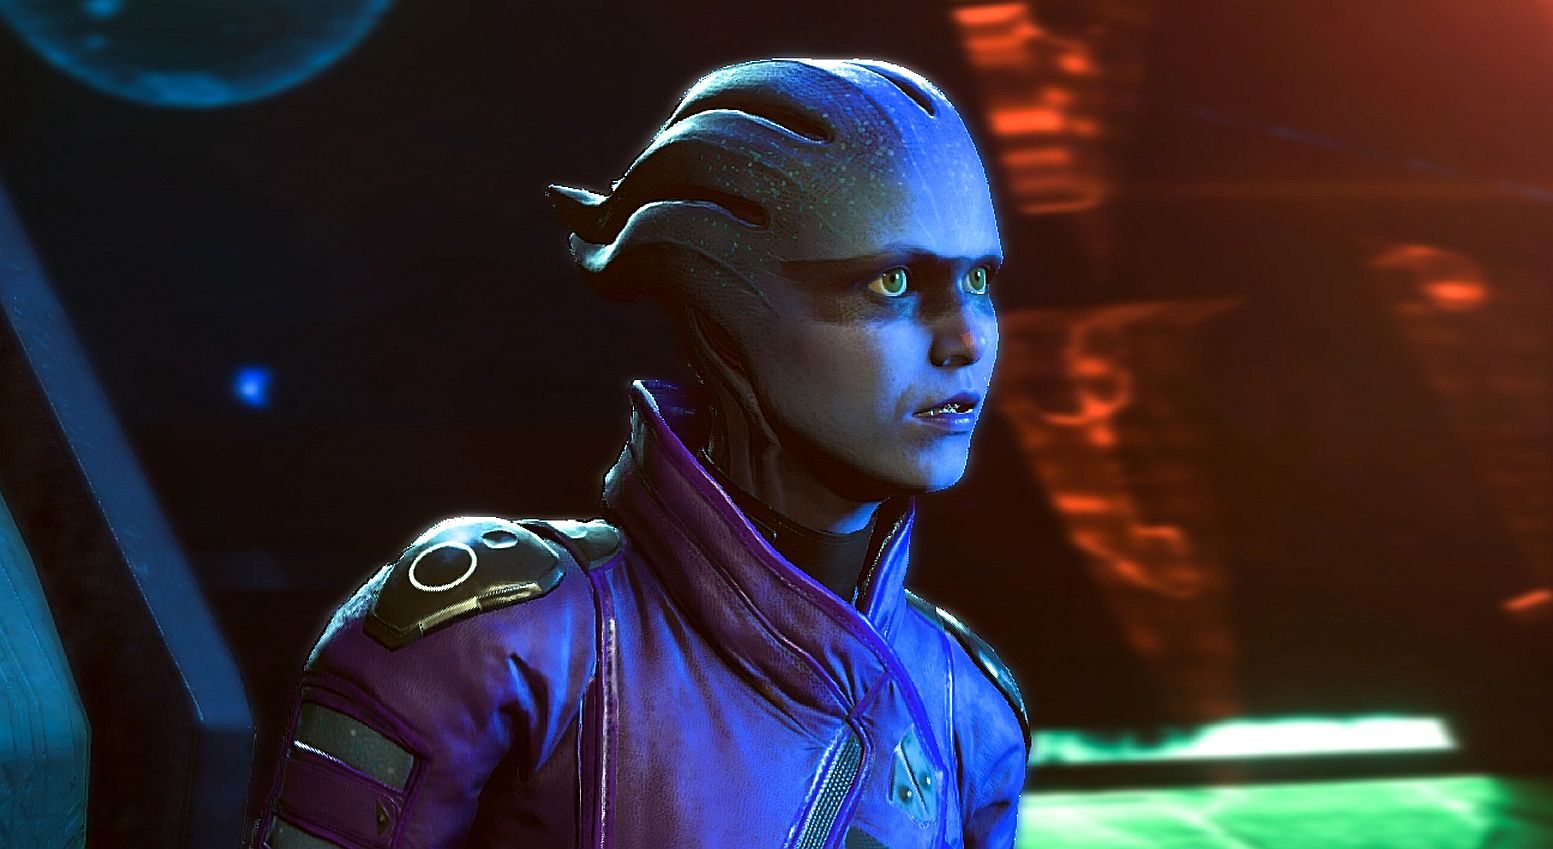 Miembros del EA Access tendrán acceso a un demo de Mass Effect: Andrómeda una semana antes de su lanzamiento